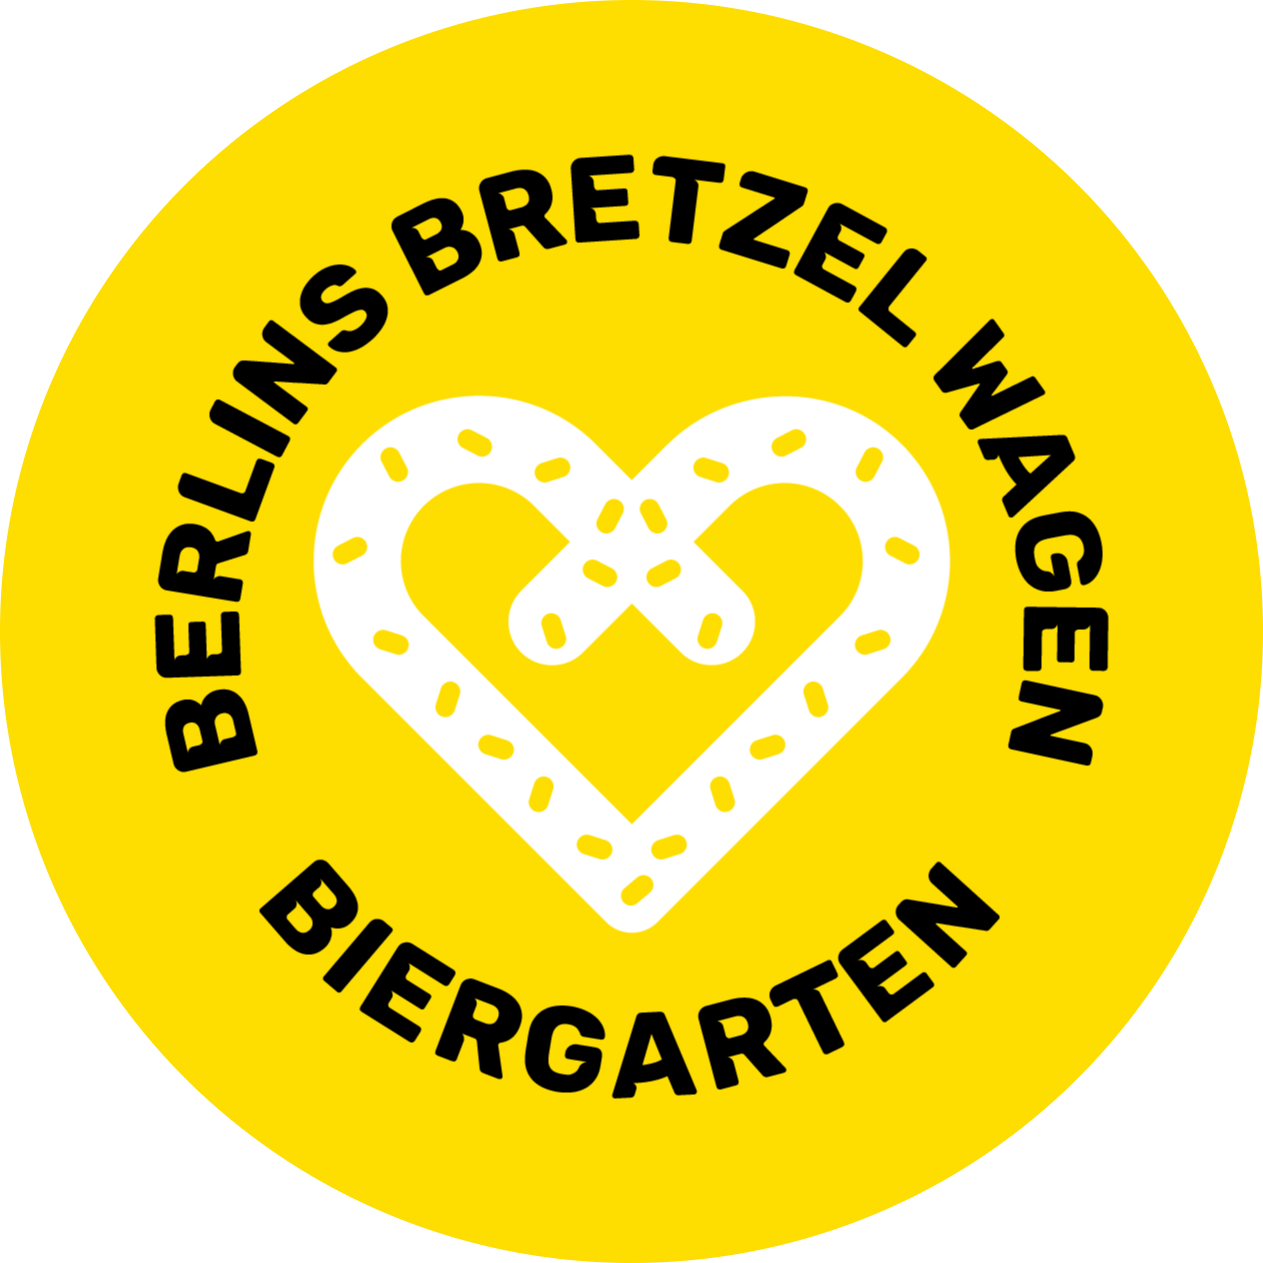 berlin_bretzel